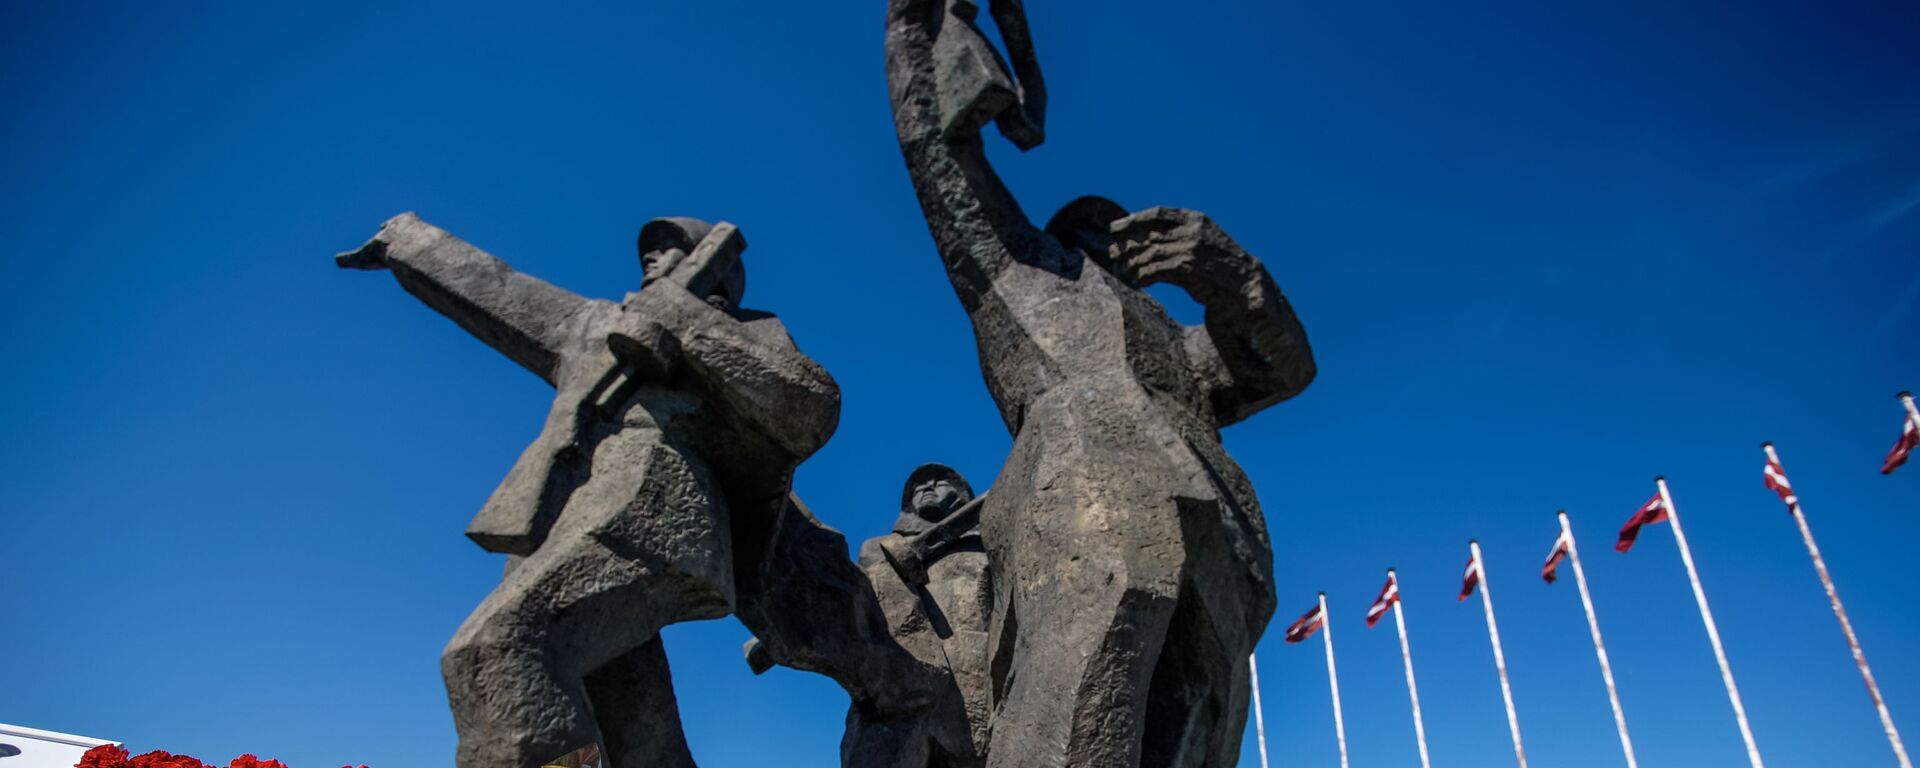 Памятник Освободителям в Риге - Sputnik Латвия, 1920, 30.04.2021